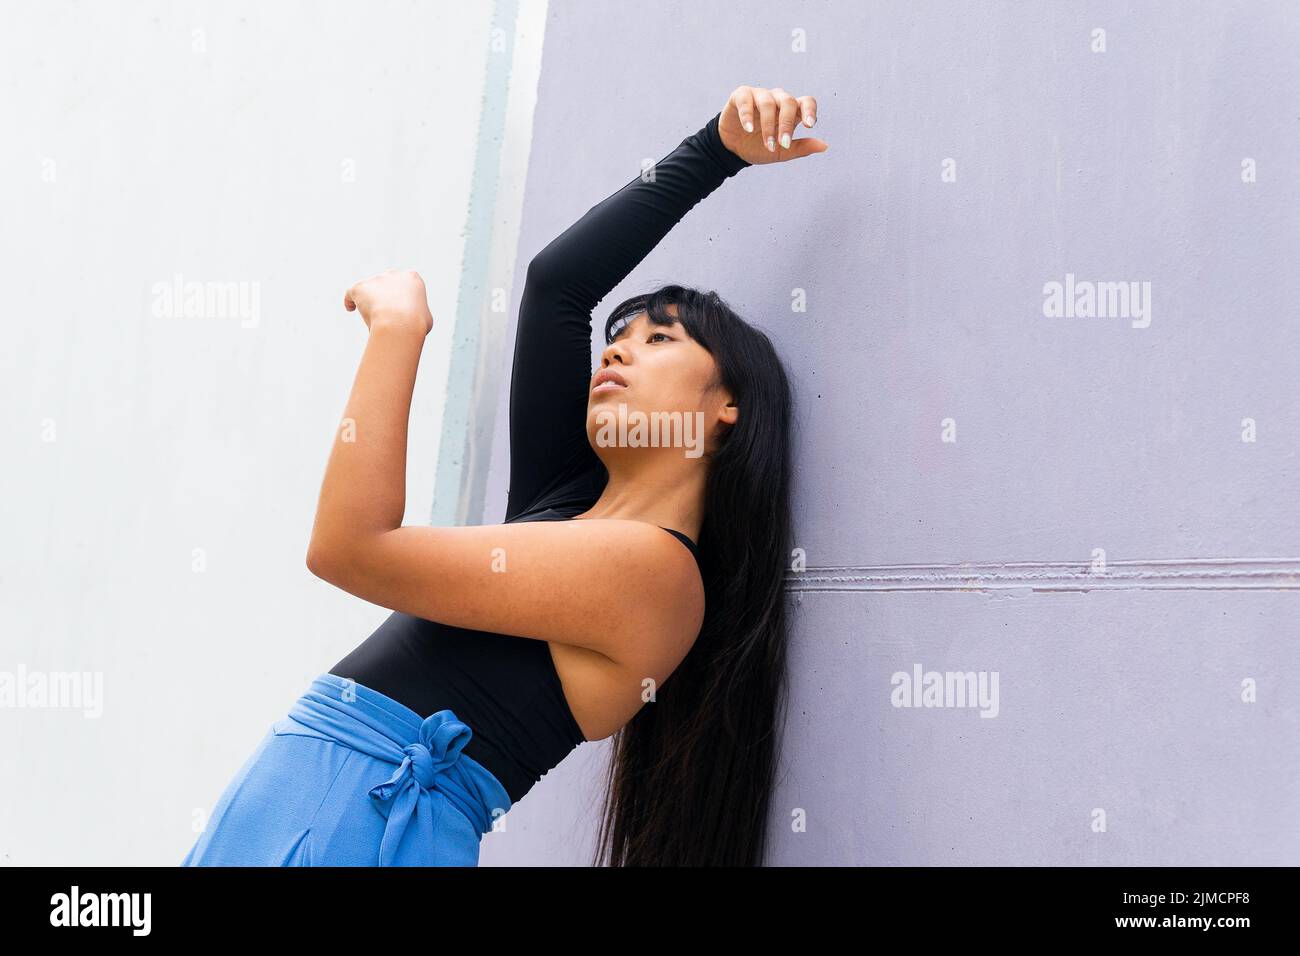 Basso angolo di graziosa giovane donna asiatica che alza le braccia e si piega mentre balla vicino al muro della costruzione sulla strada della città Foto Stock